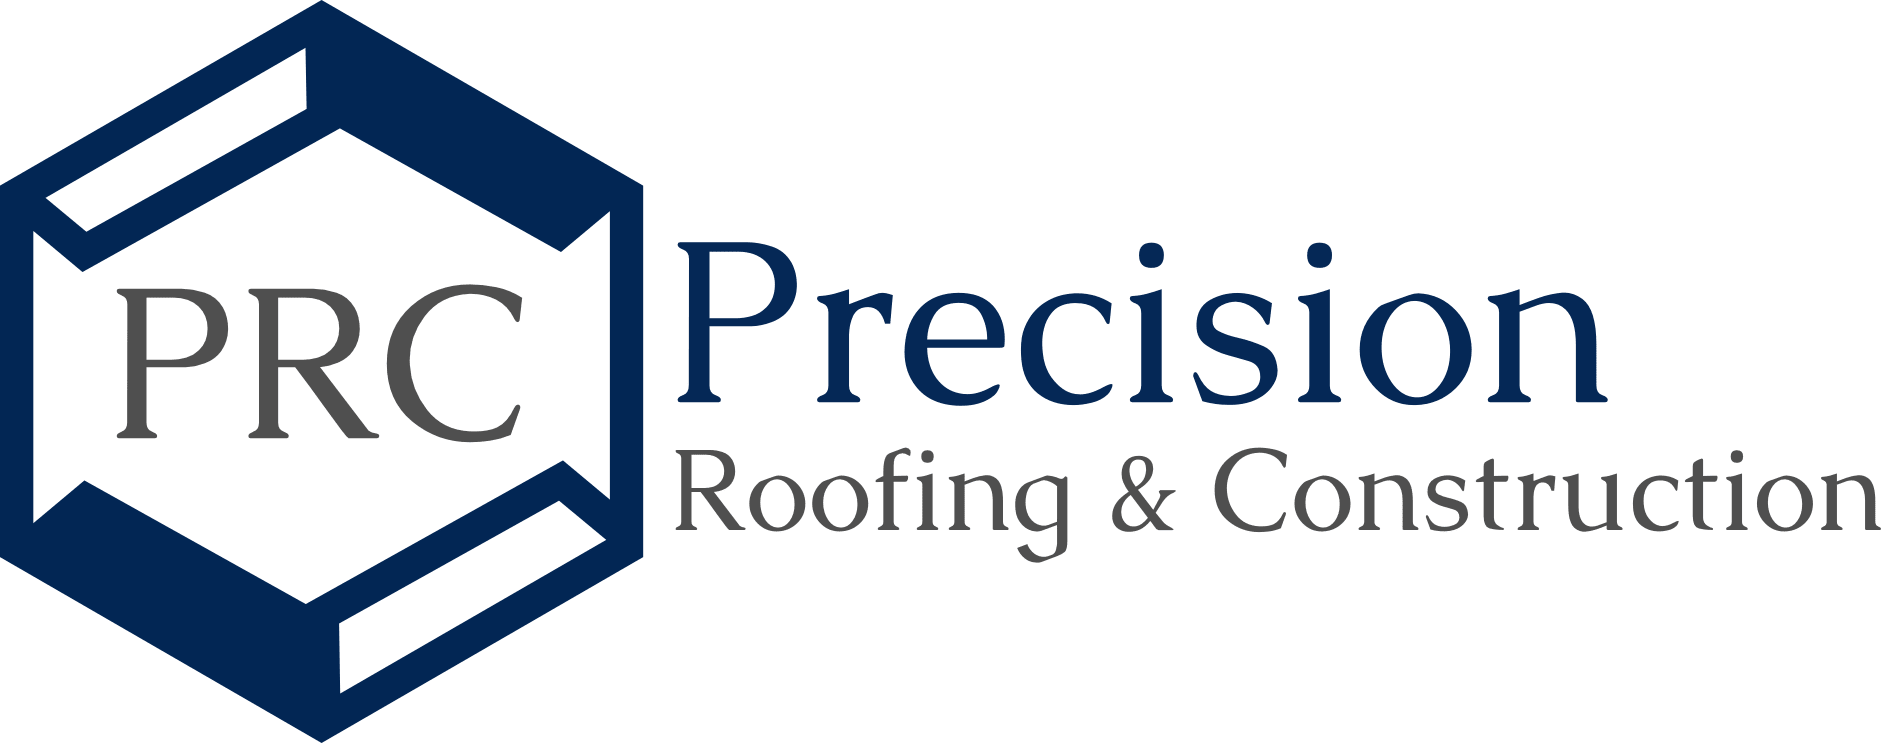 Precision Roofing & Construction | Better Business Bureau® Profile